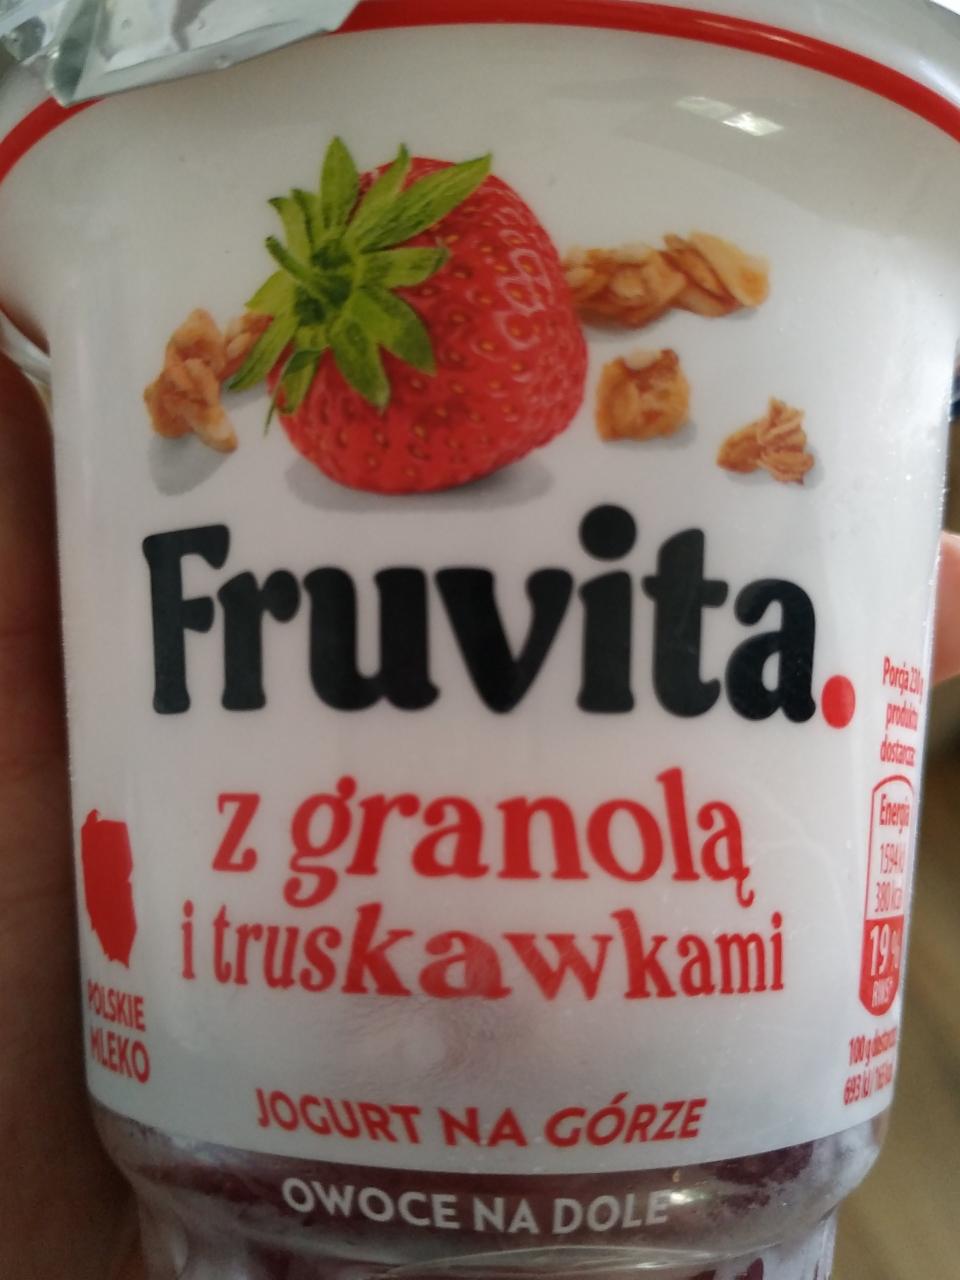 Фото - truskawkowy йогурт с клубникой Fruvita